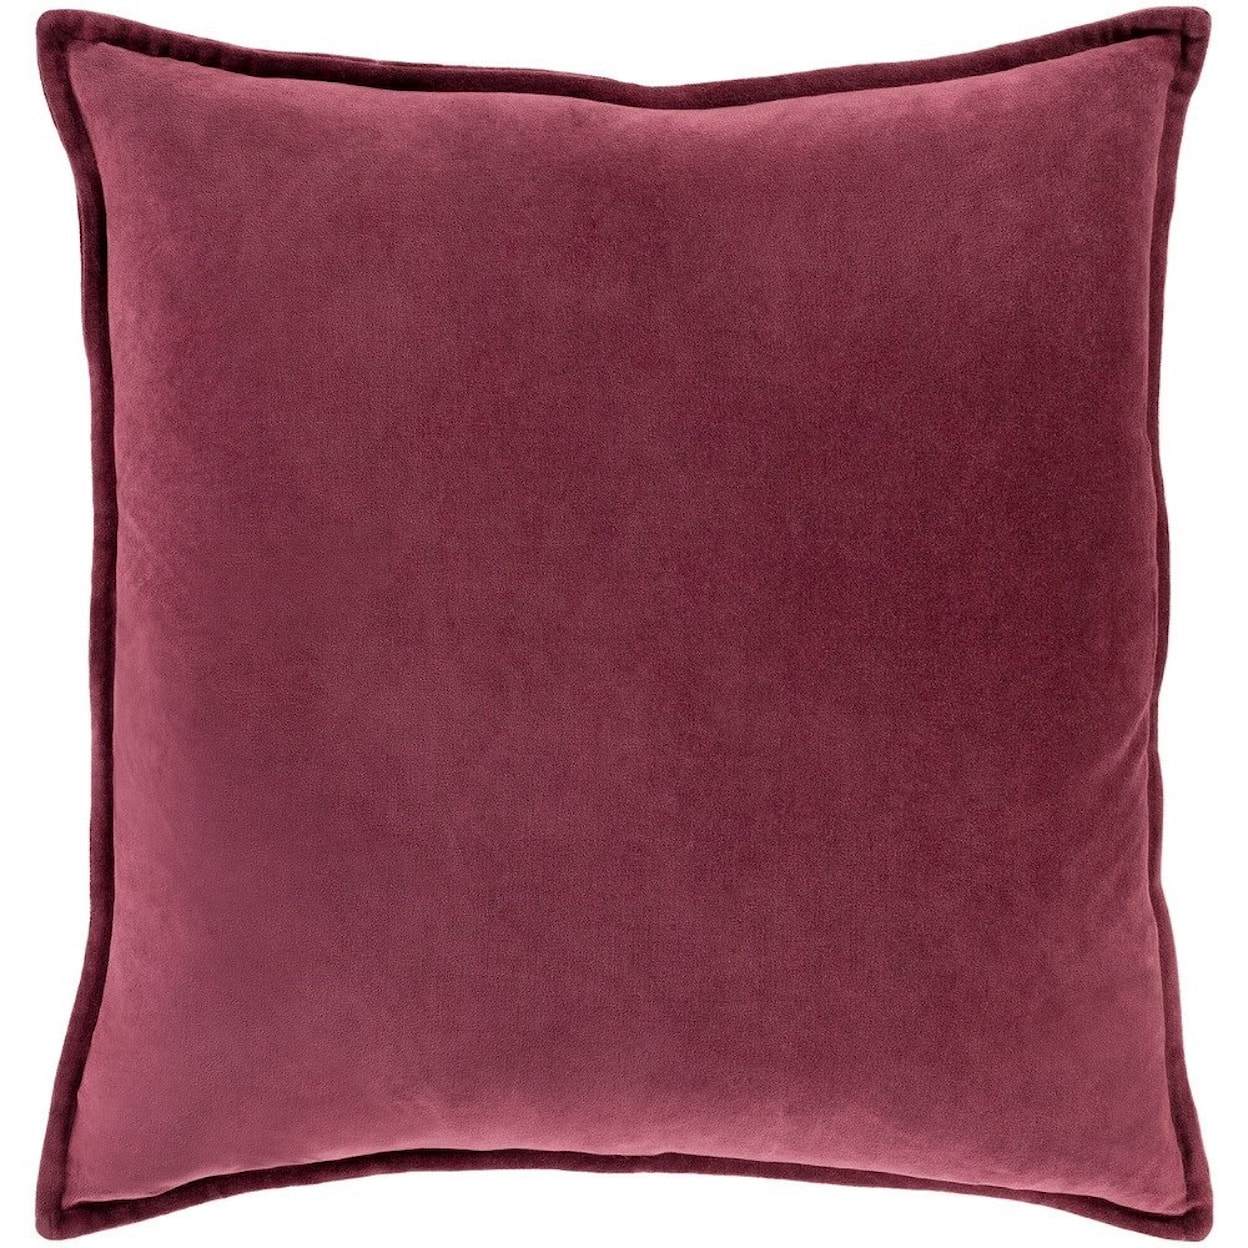 Ruby-Gordon Accents Cotton Velvet 22 x 22 x 5 Down Throw Pillow